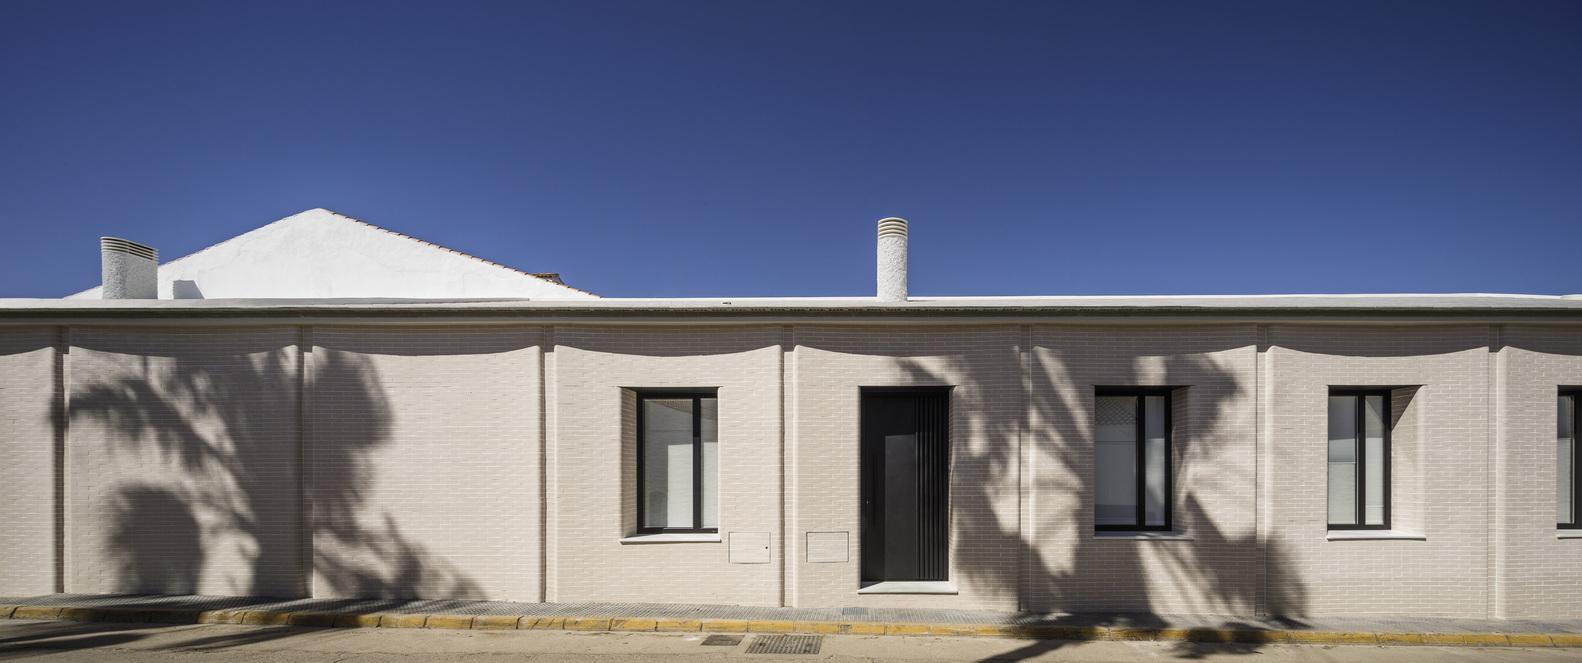 【西班牙特色住宅】運用線條把傳統建築概念融入其中